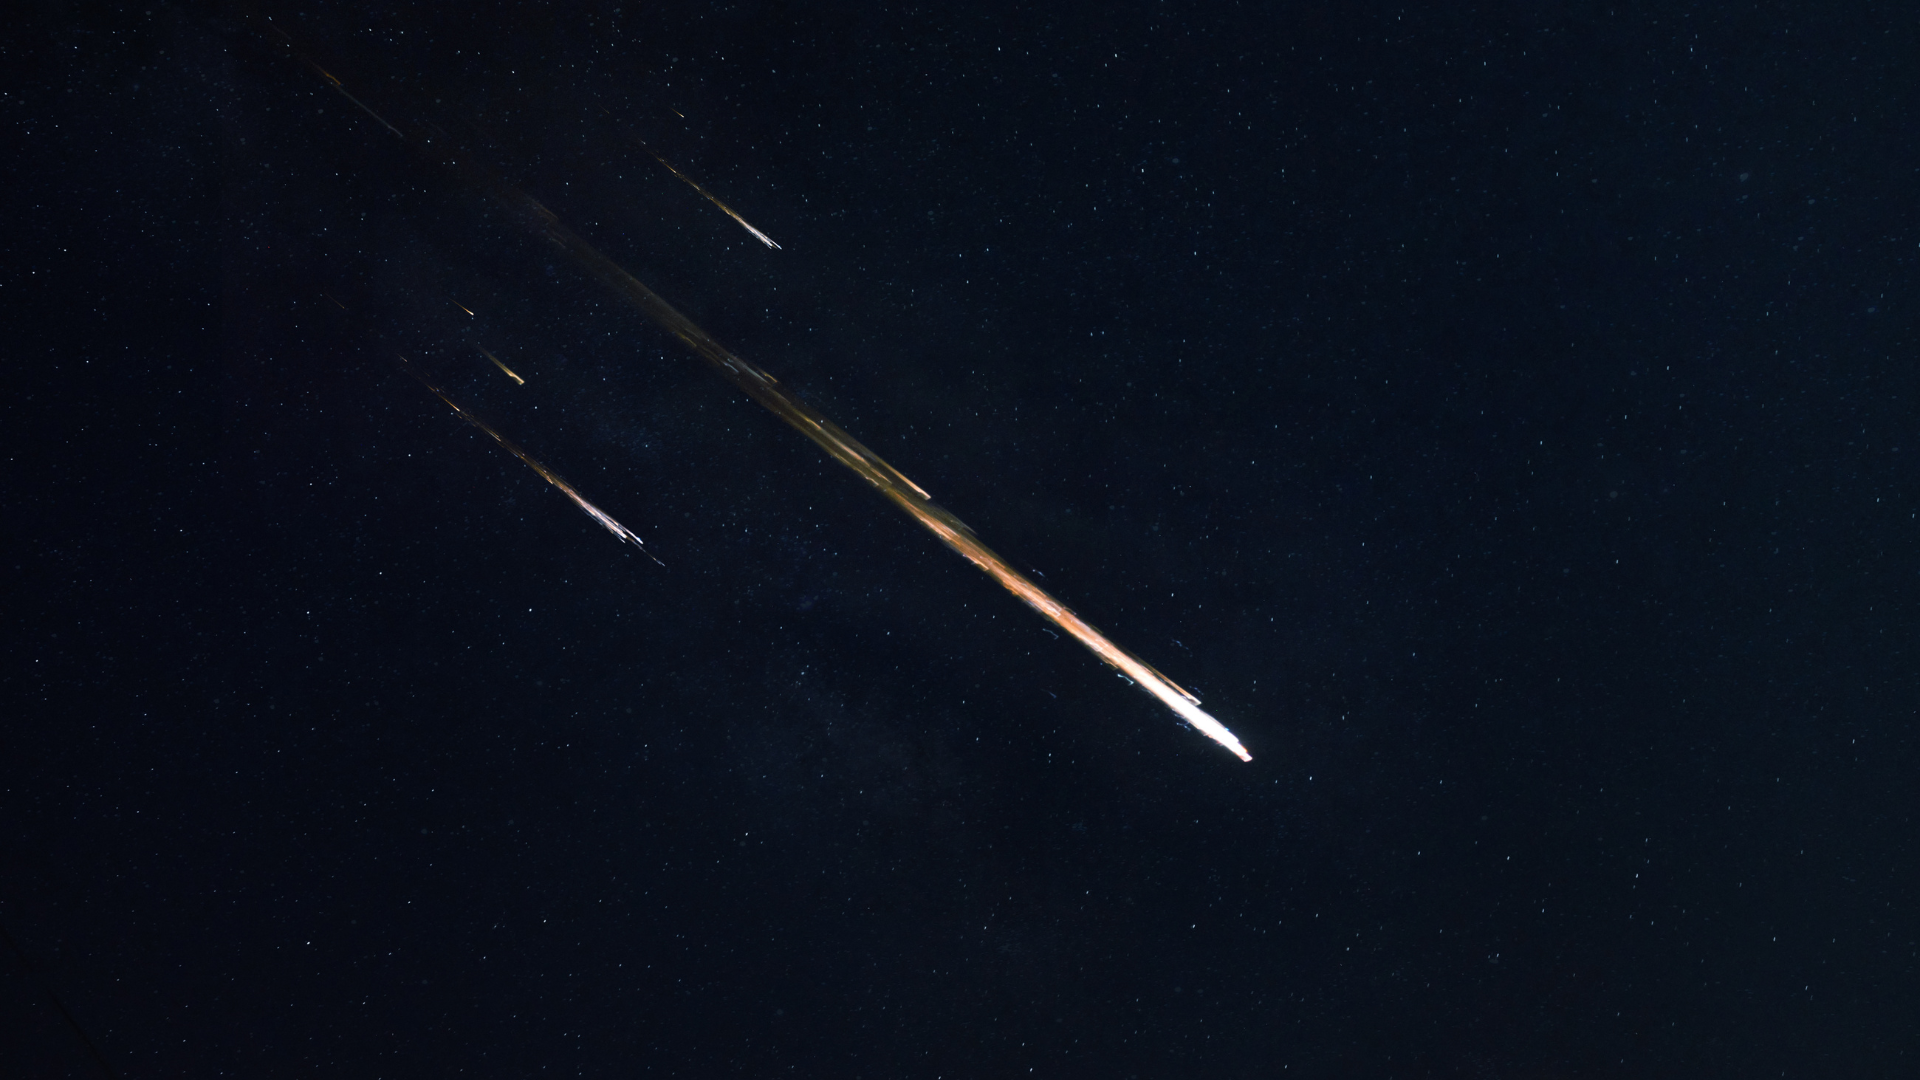 Image of meteors